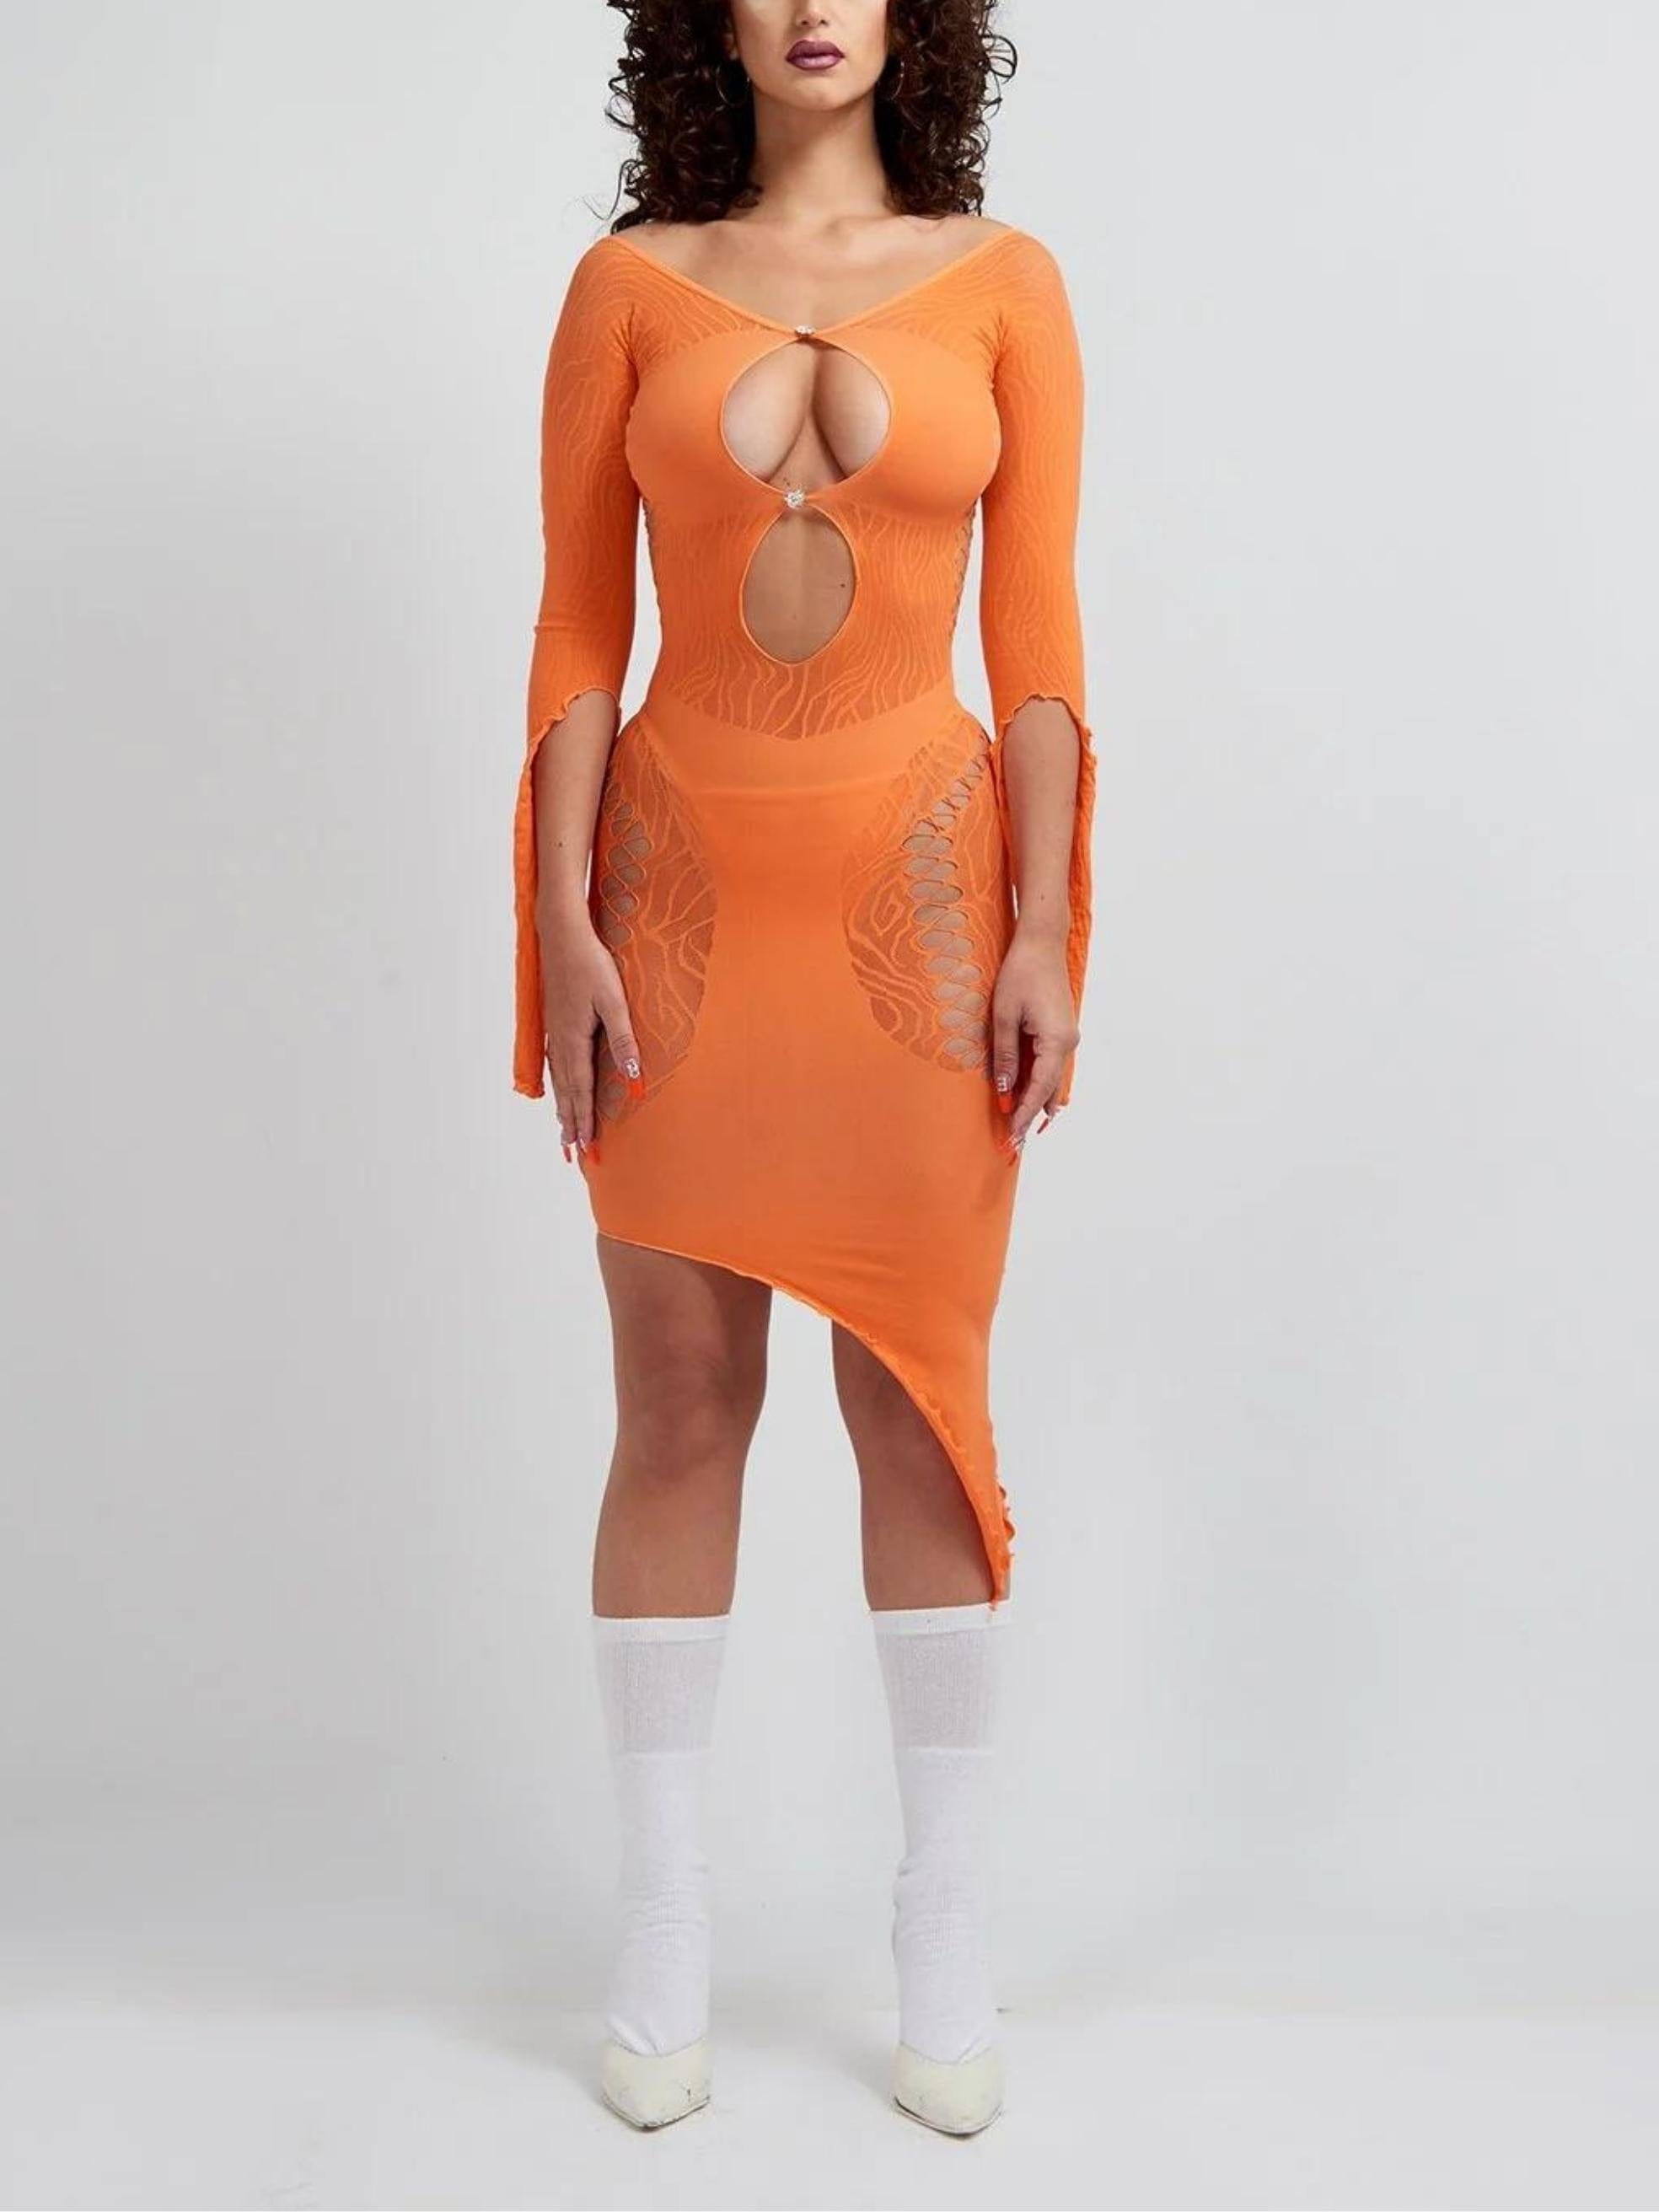 Charlotte Dress in Tangerine